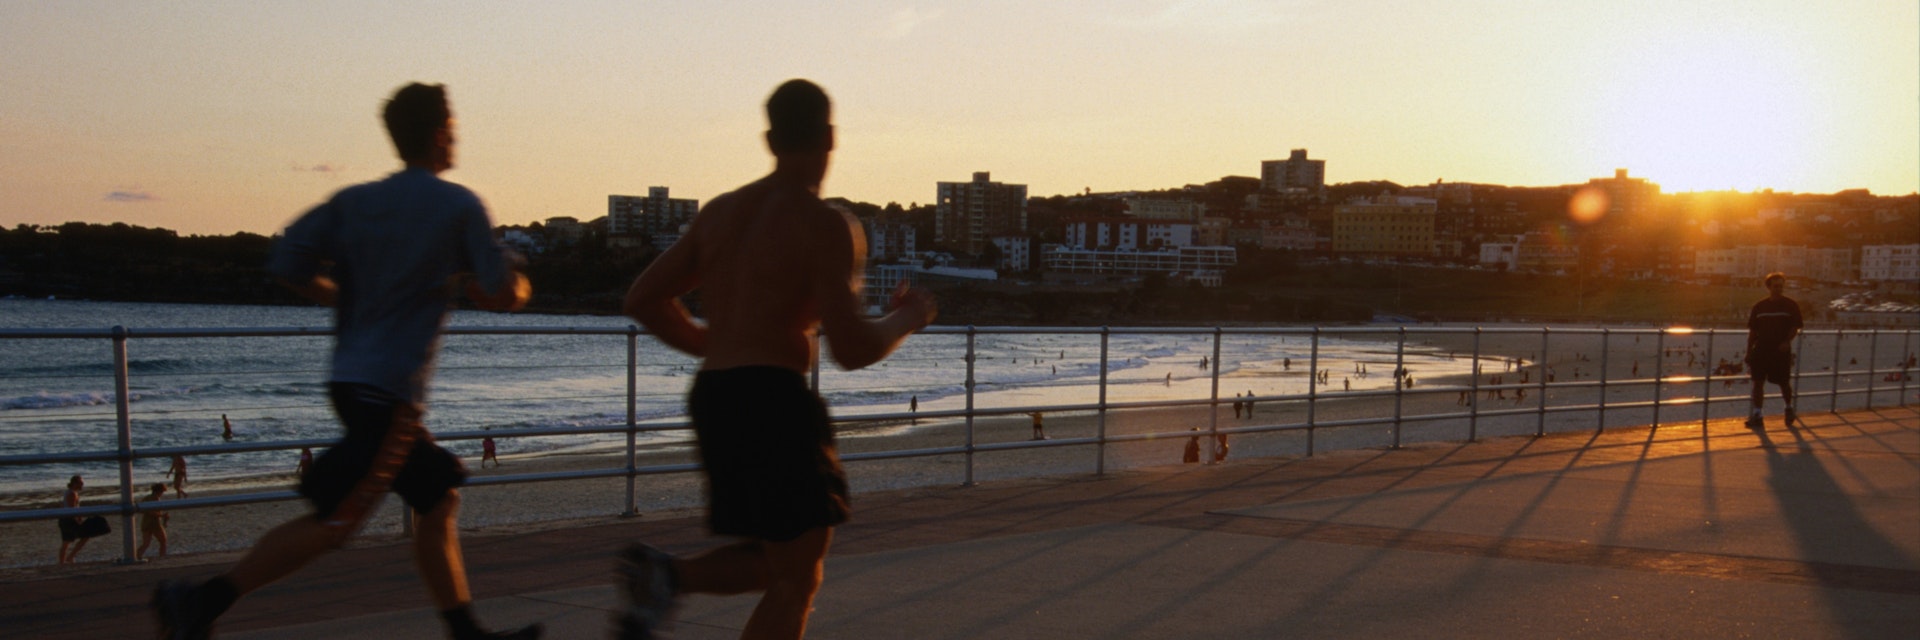 Joggers on promenade at Bondi Beach.